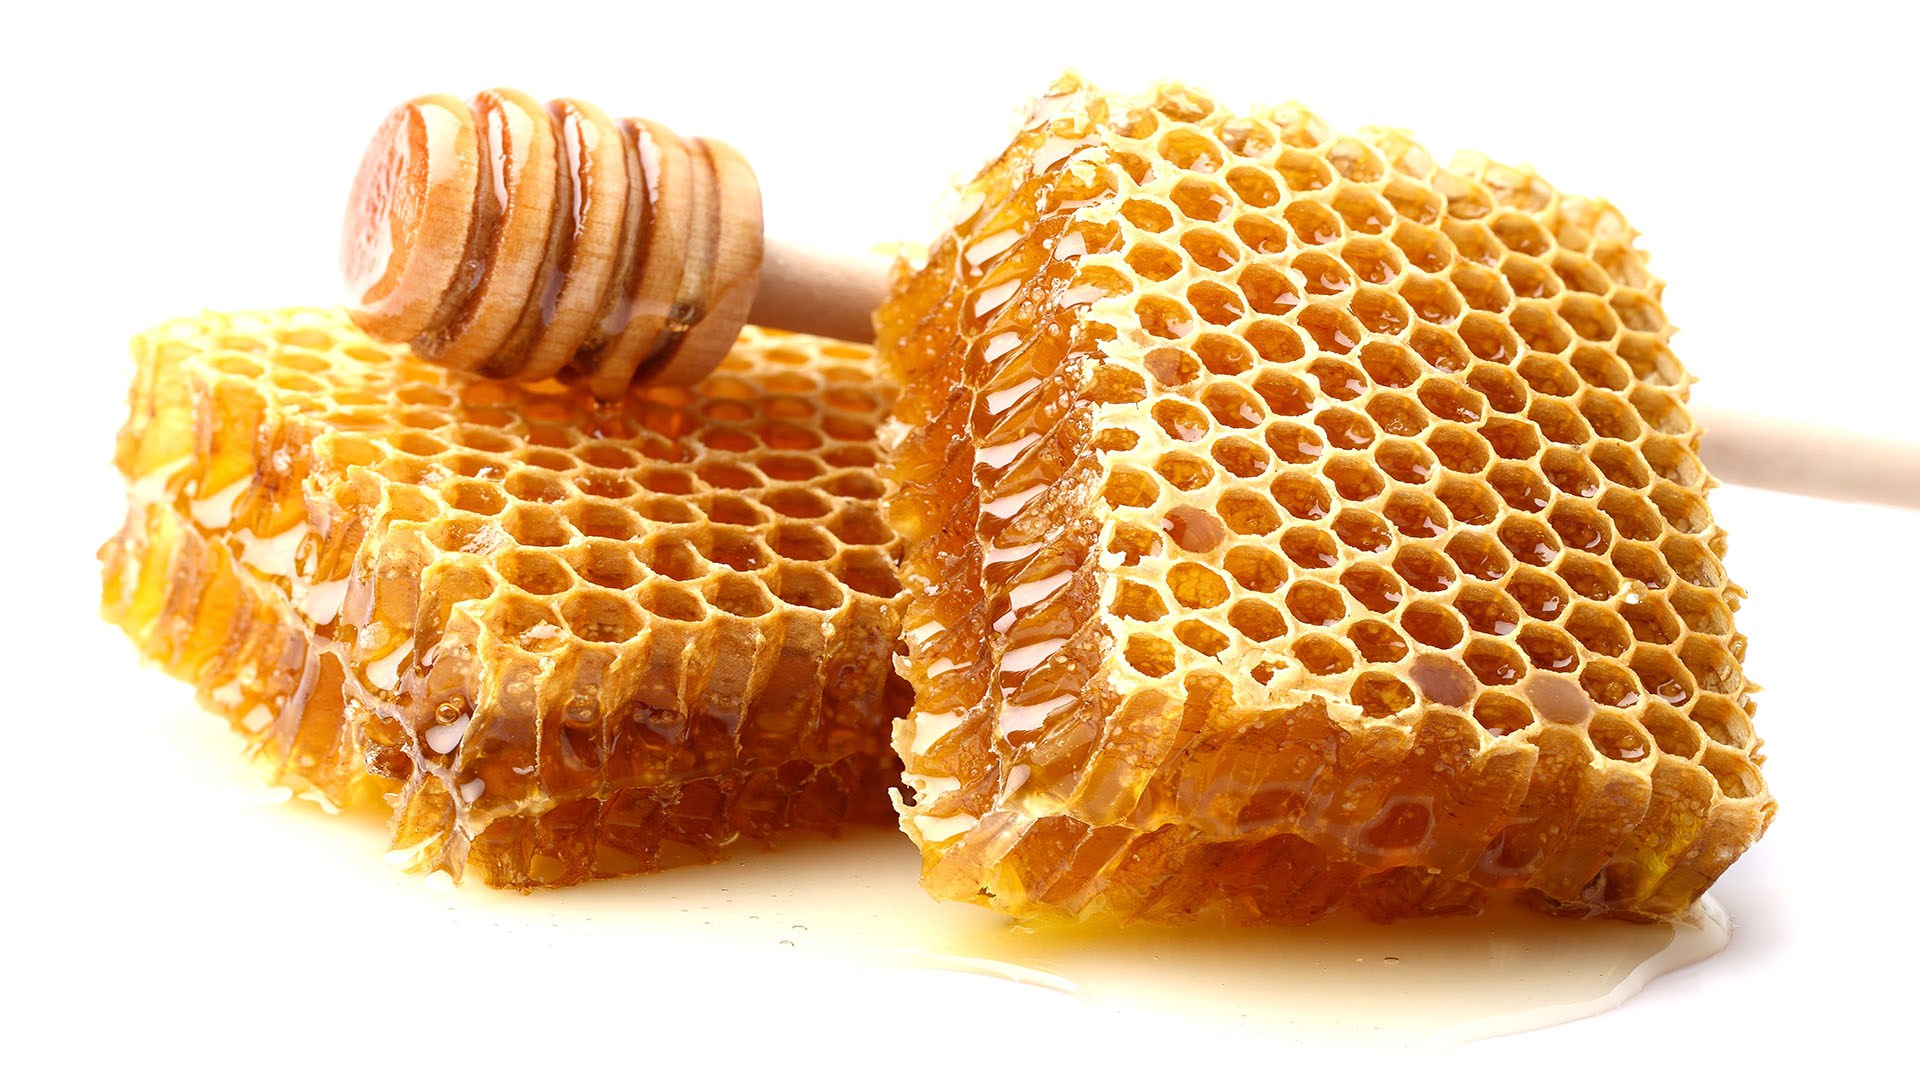 فوائد شمع العسل العلاجية واستخداماته للعناية بالبشرة والشعر